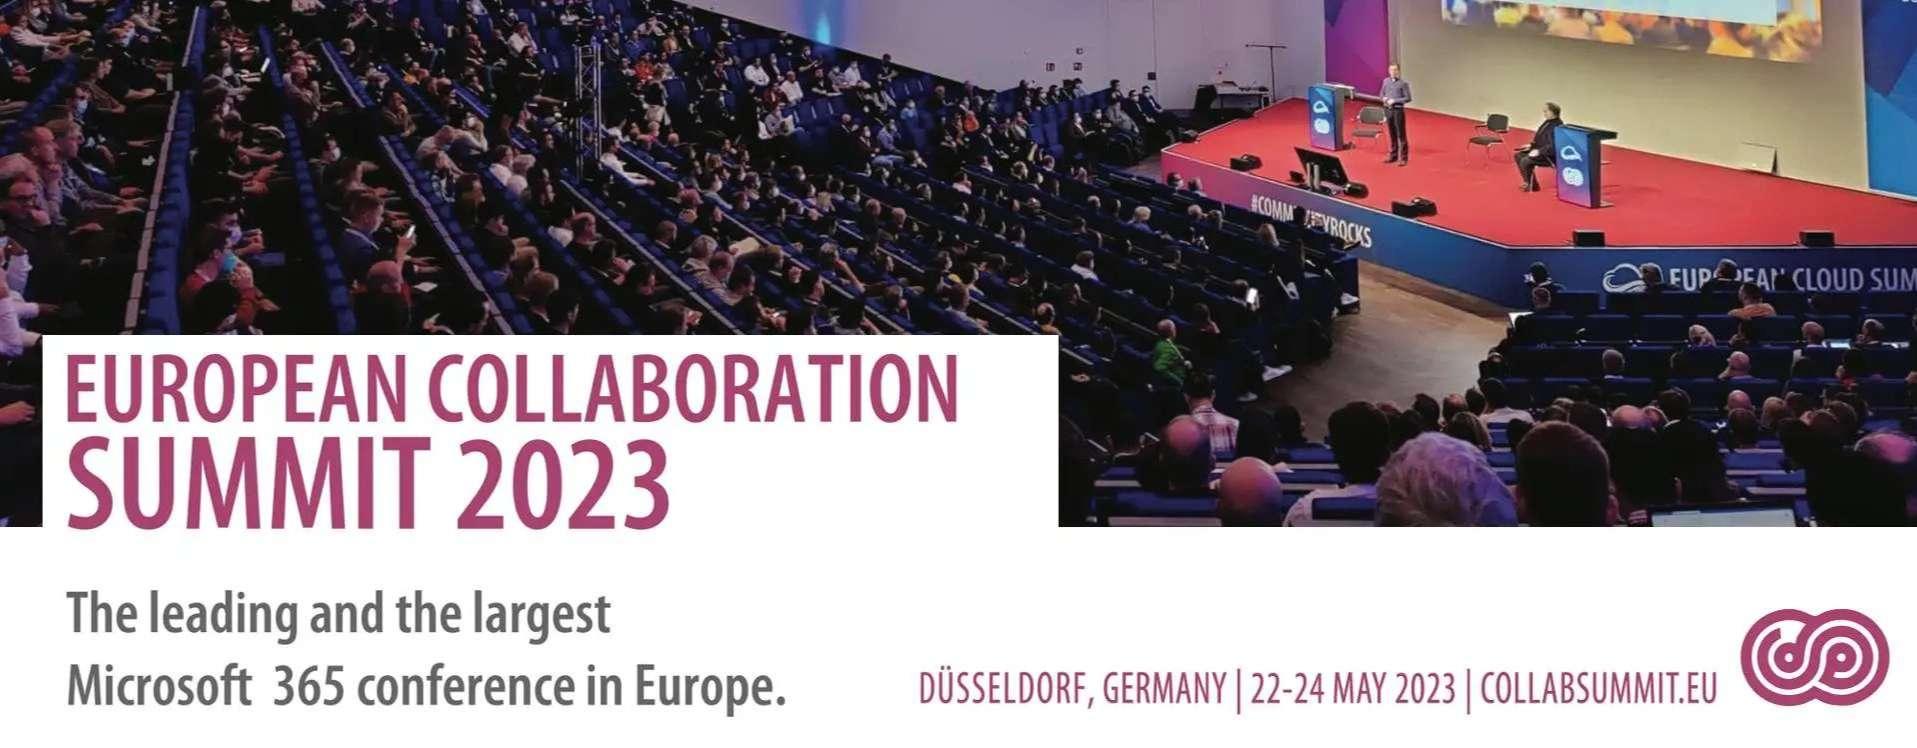 European Collaboration Summit 2023